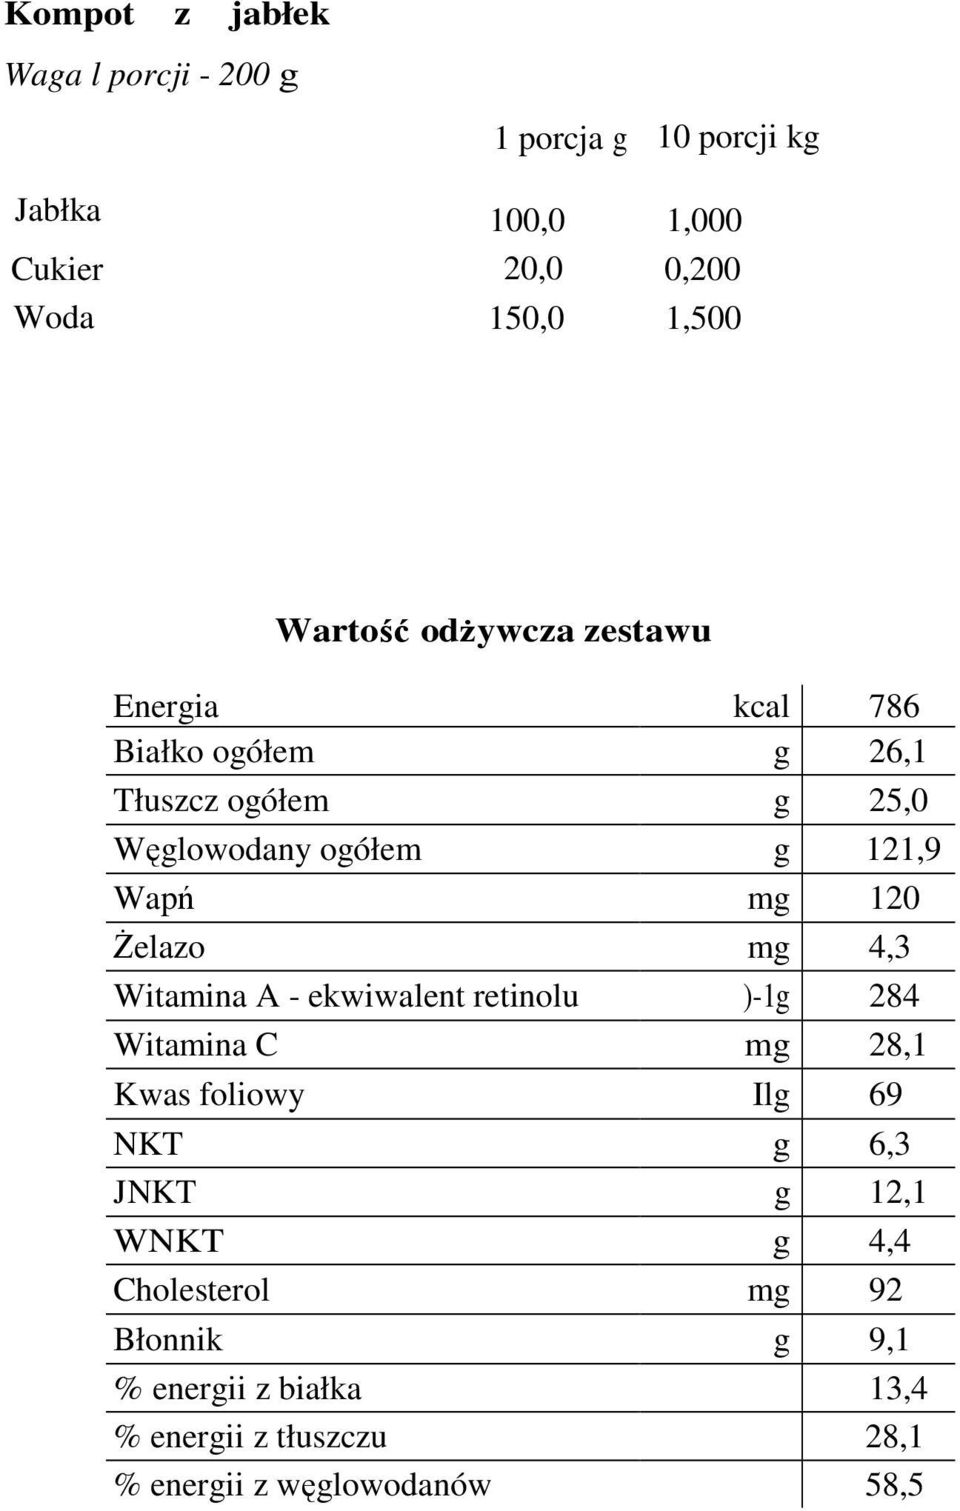 120 śelazo mg 4,3 Witamina A - ekwiwalent retinolu )-1g 284 Witamina C mg 28,1 Kwas foliowy Ilg 69 NKT g 6,3 JNKT g